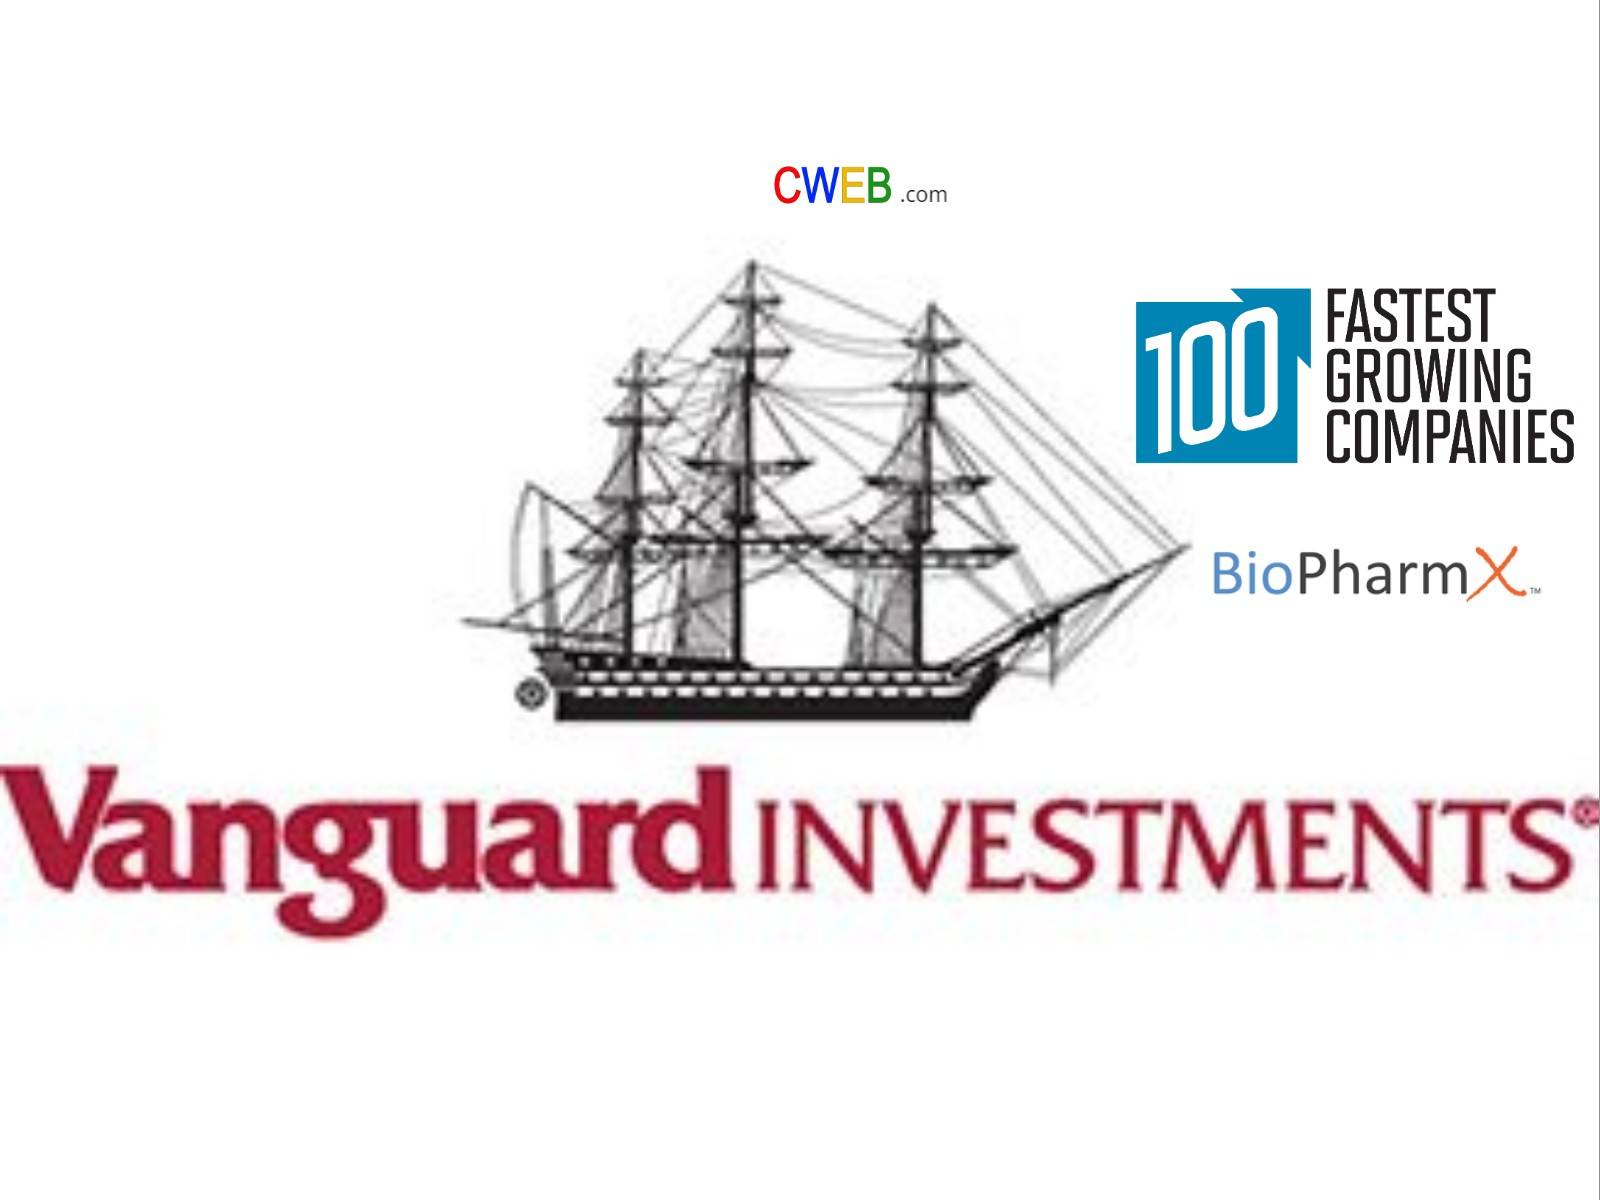 Vanguard и её инвестиционные и etf фонды | equity